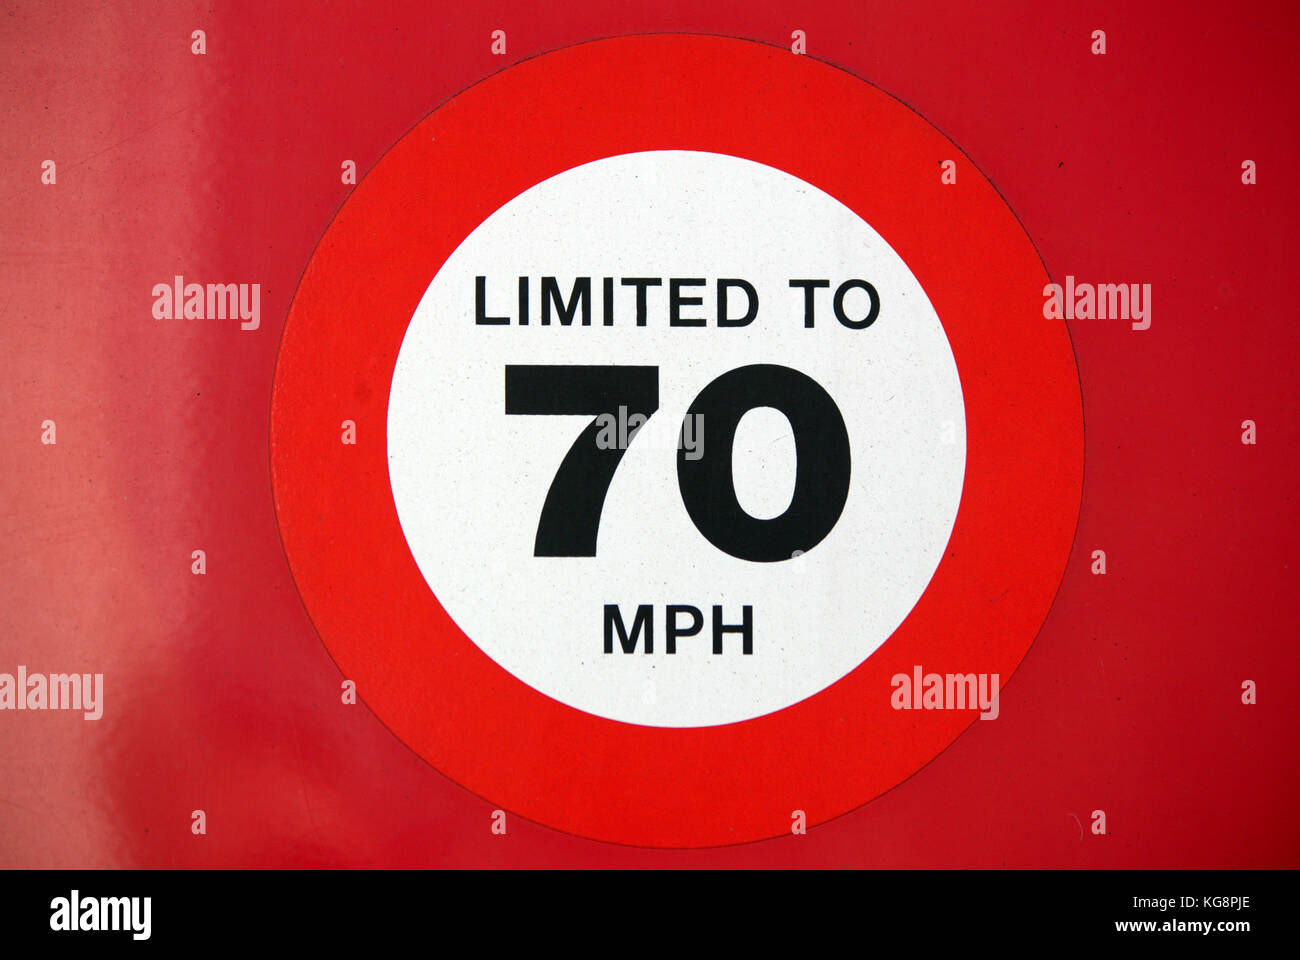 Red limitada a 70 mph de velocidad sticker firmar en el vehículo alquiler de furgoneta camión Foto de stock